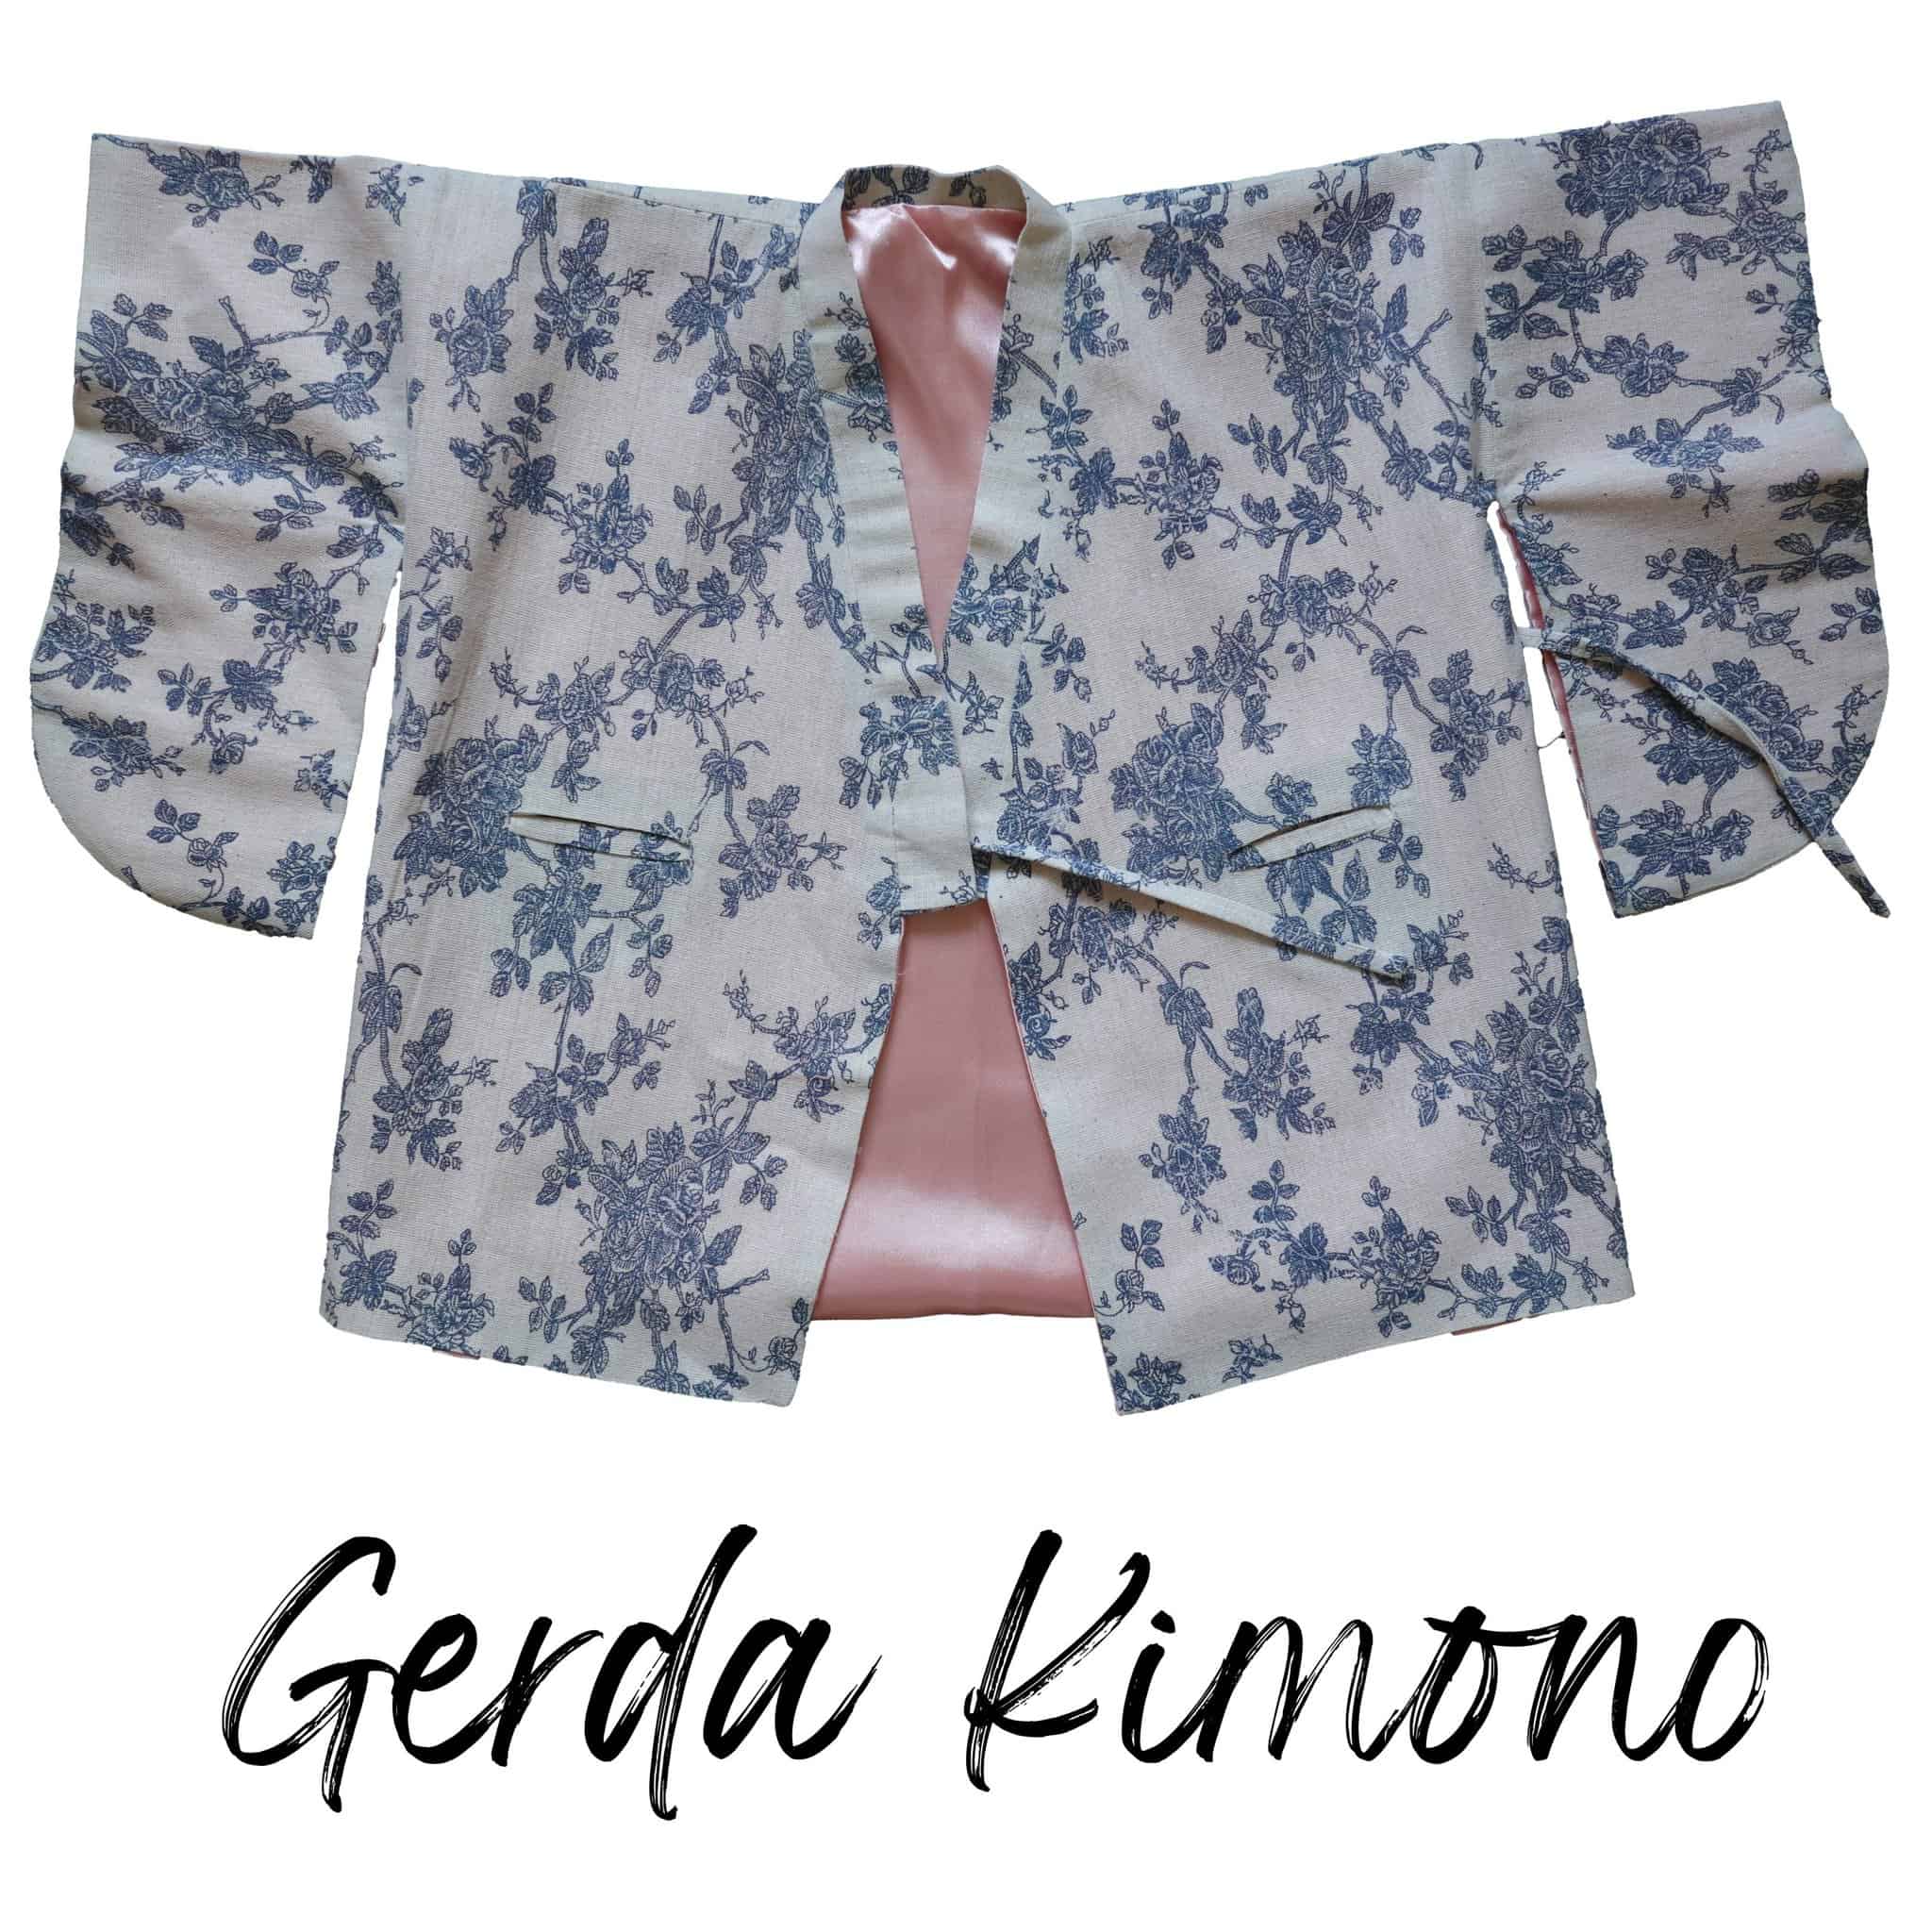 Kimono PDF Sewing Pattern - Gerda Kimono - The Tailoress PDF Sewing Patterns